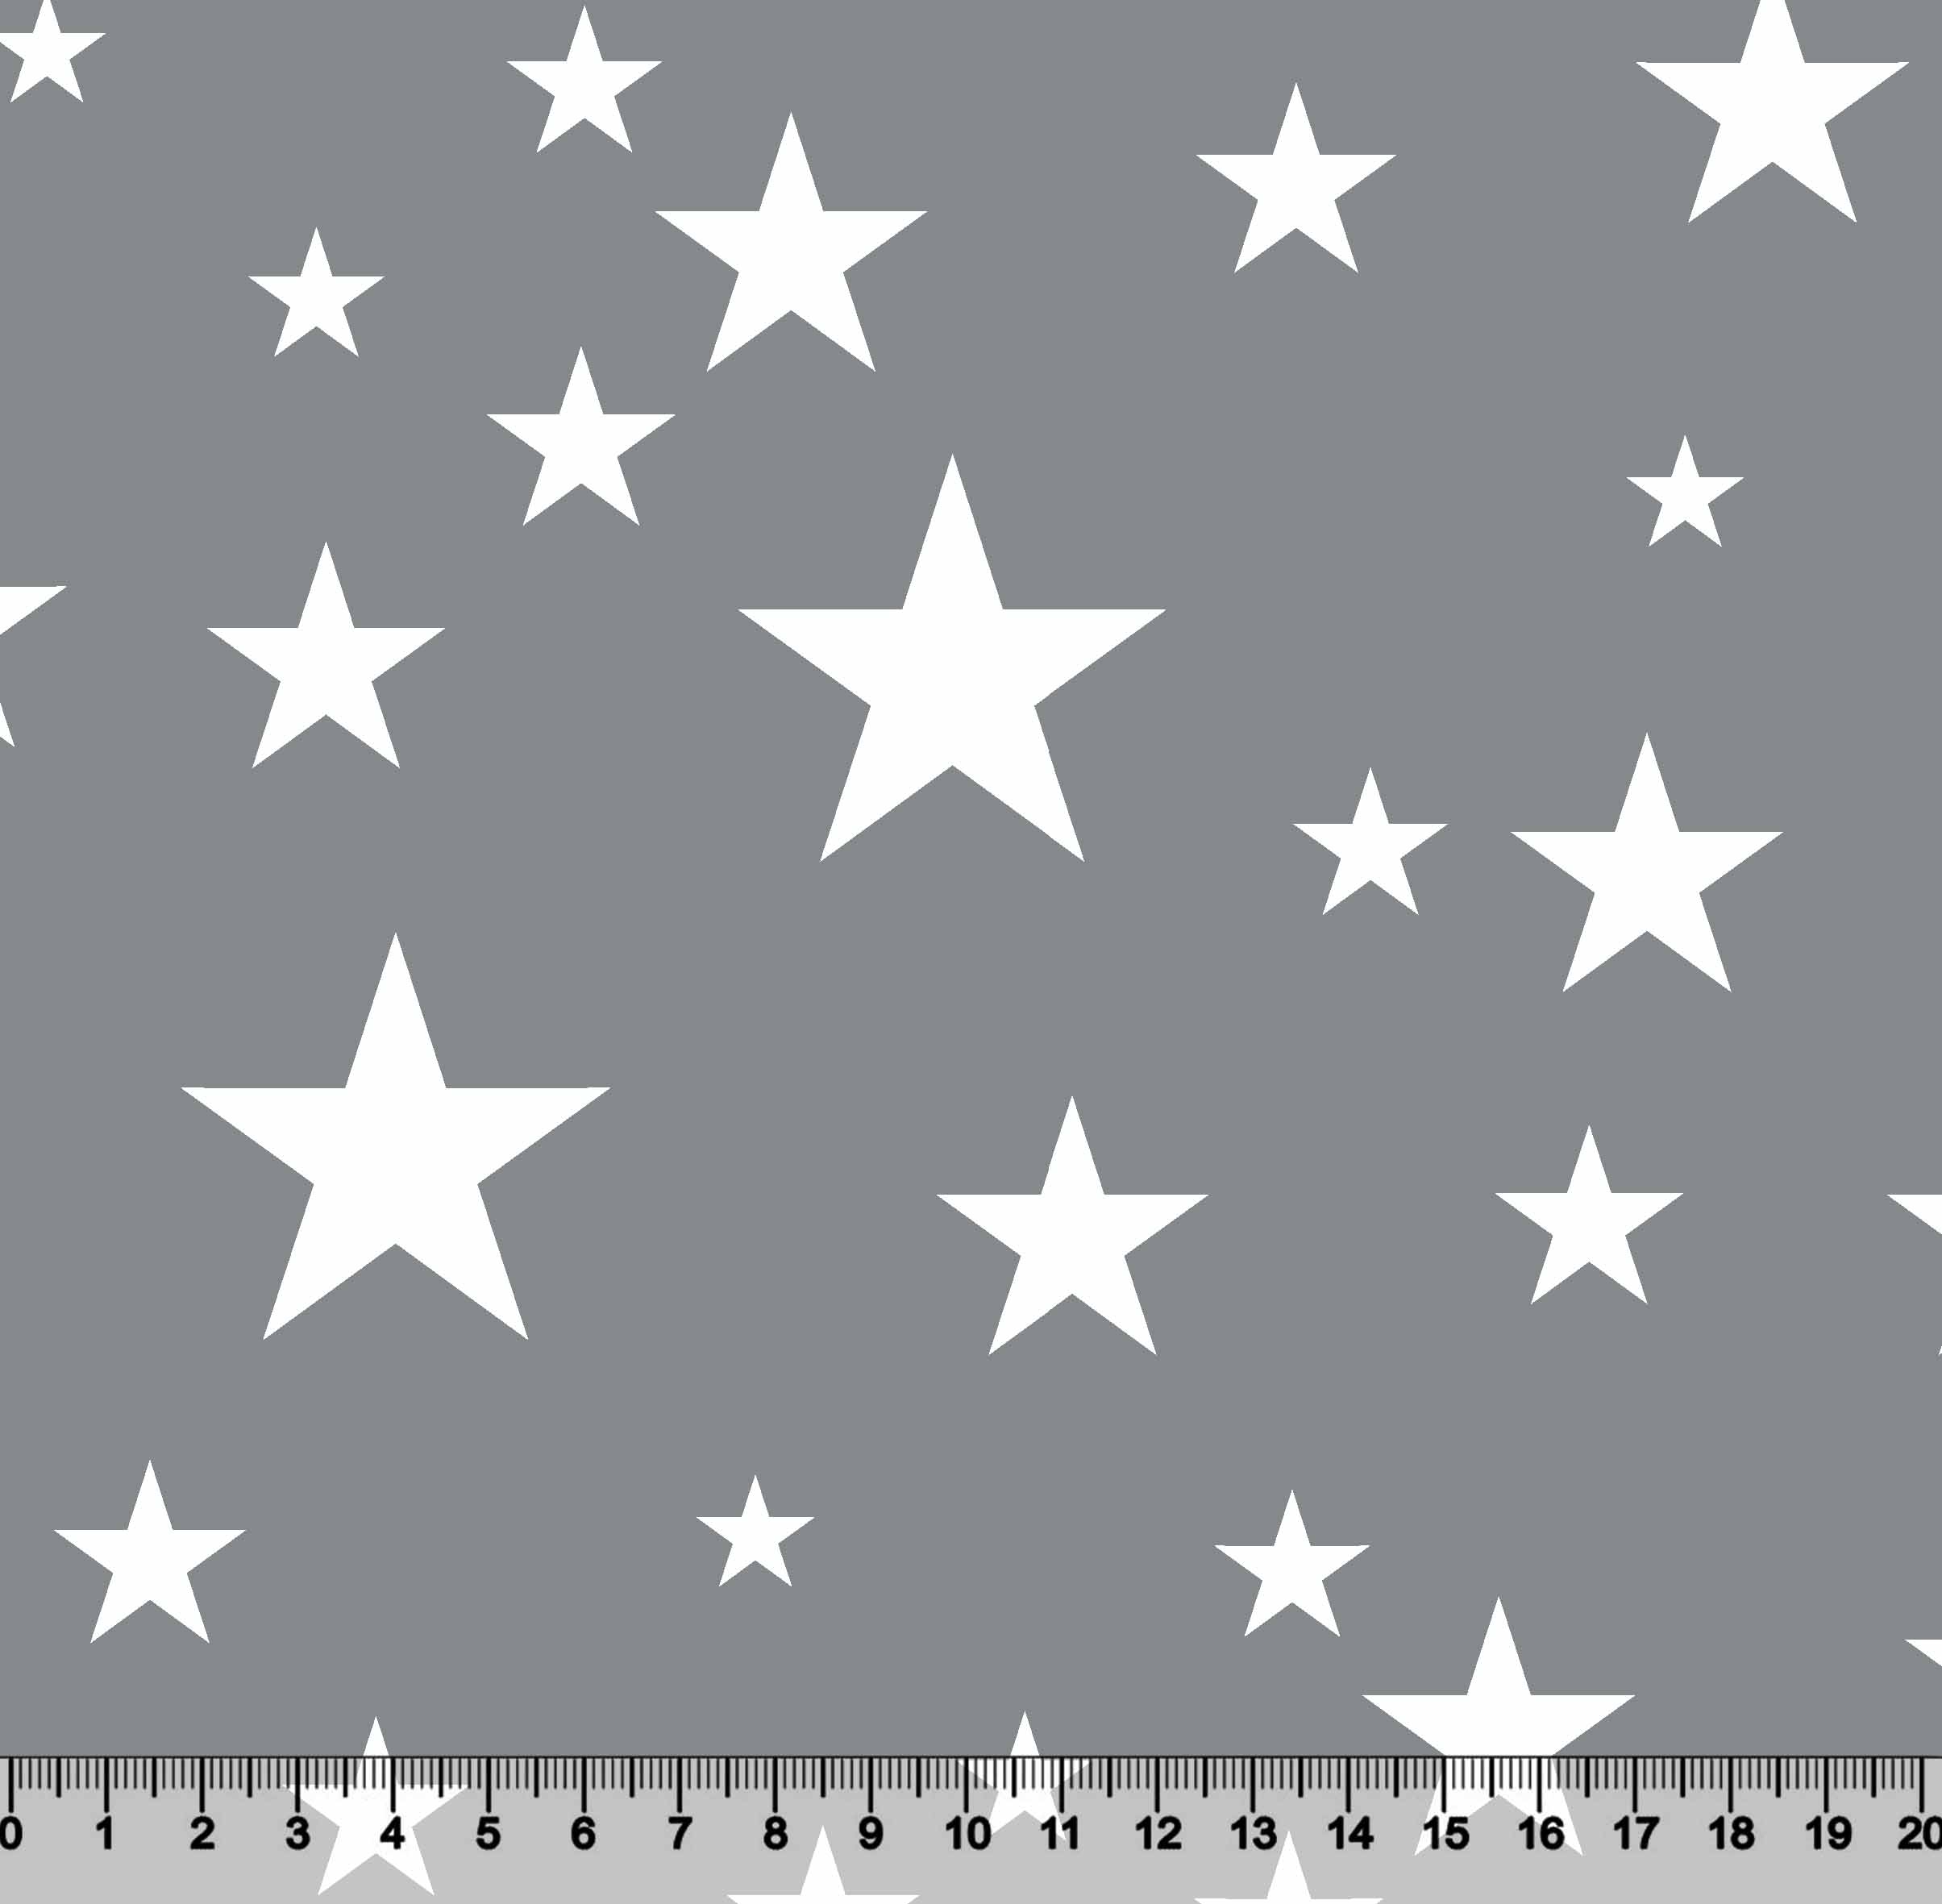 Estrelas Des 2907 Var01 -  fundo Cinza